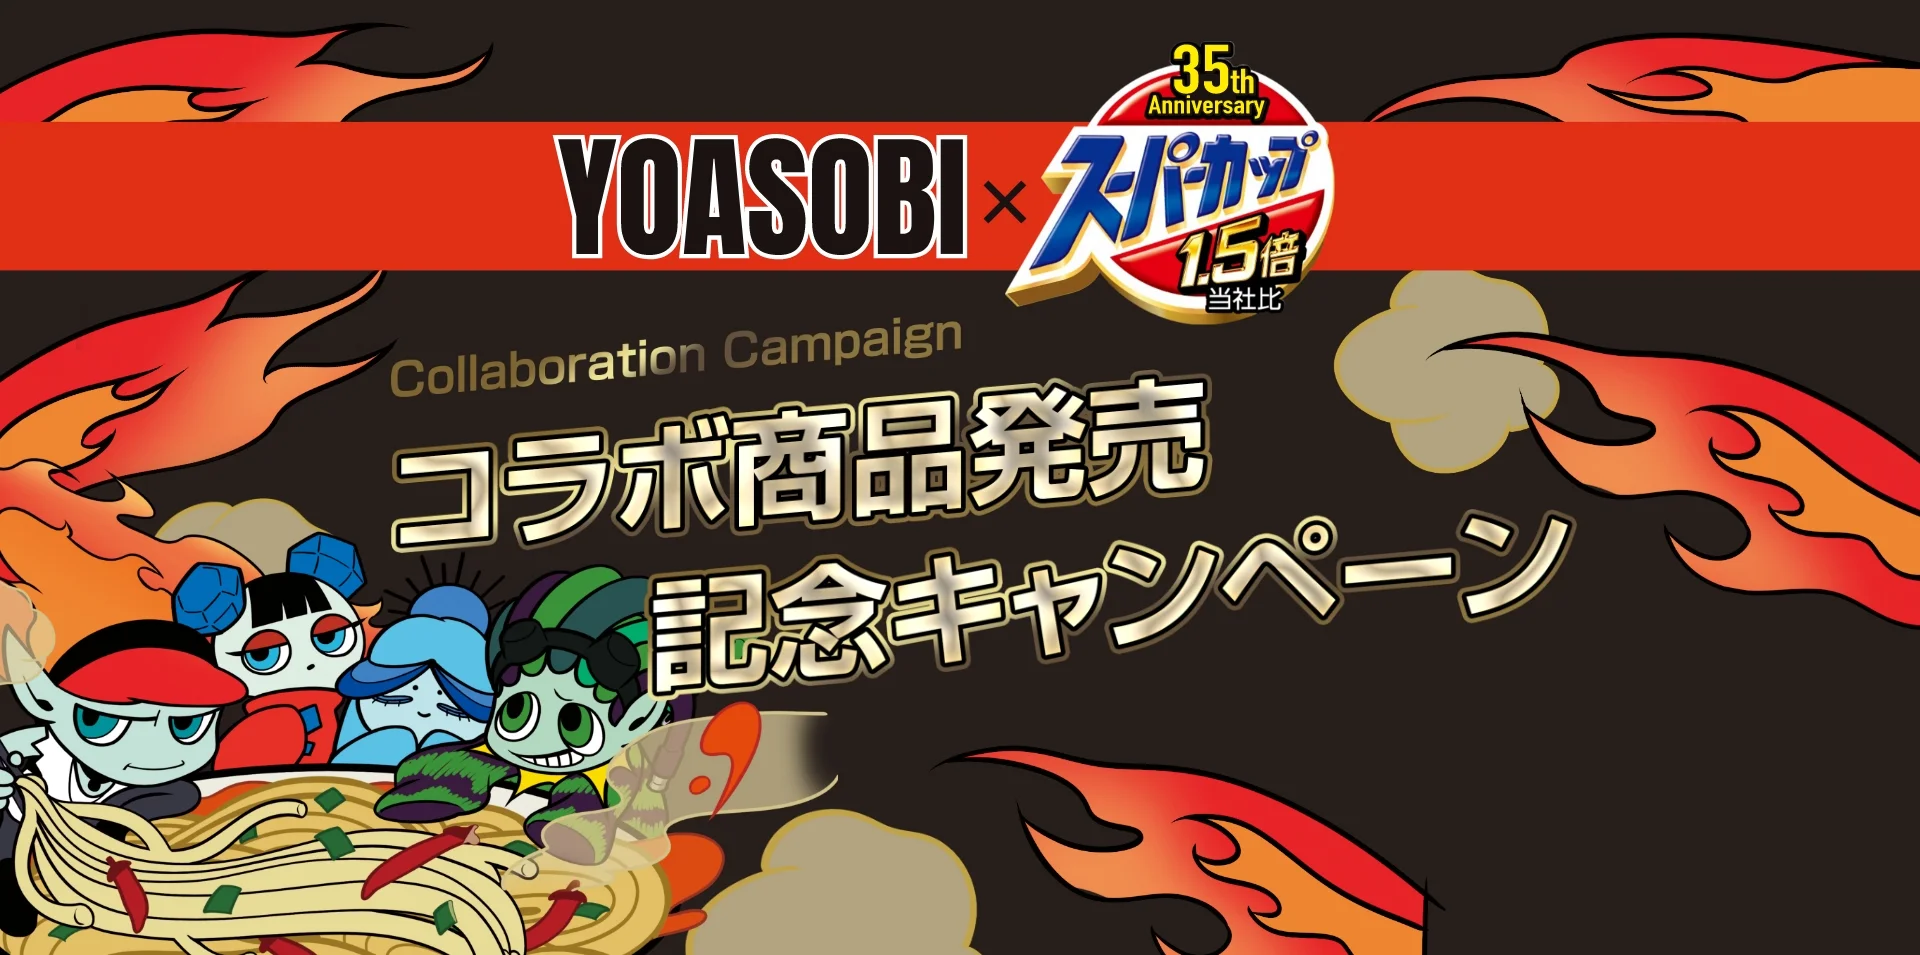 スーパーカップ YOASOBI コラボ商品発売記念キャンペーン